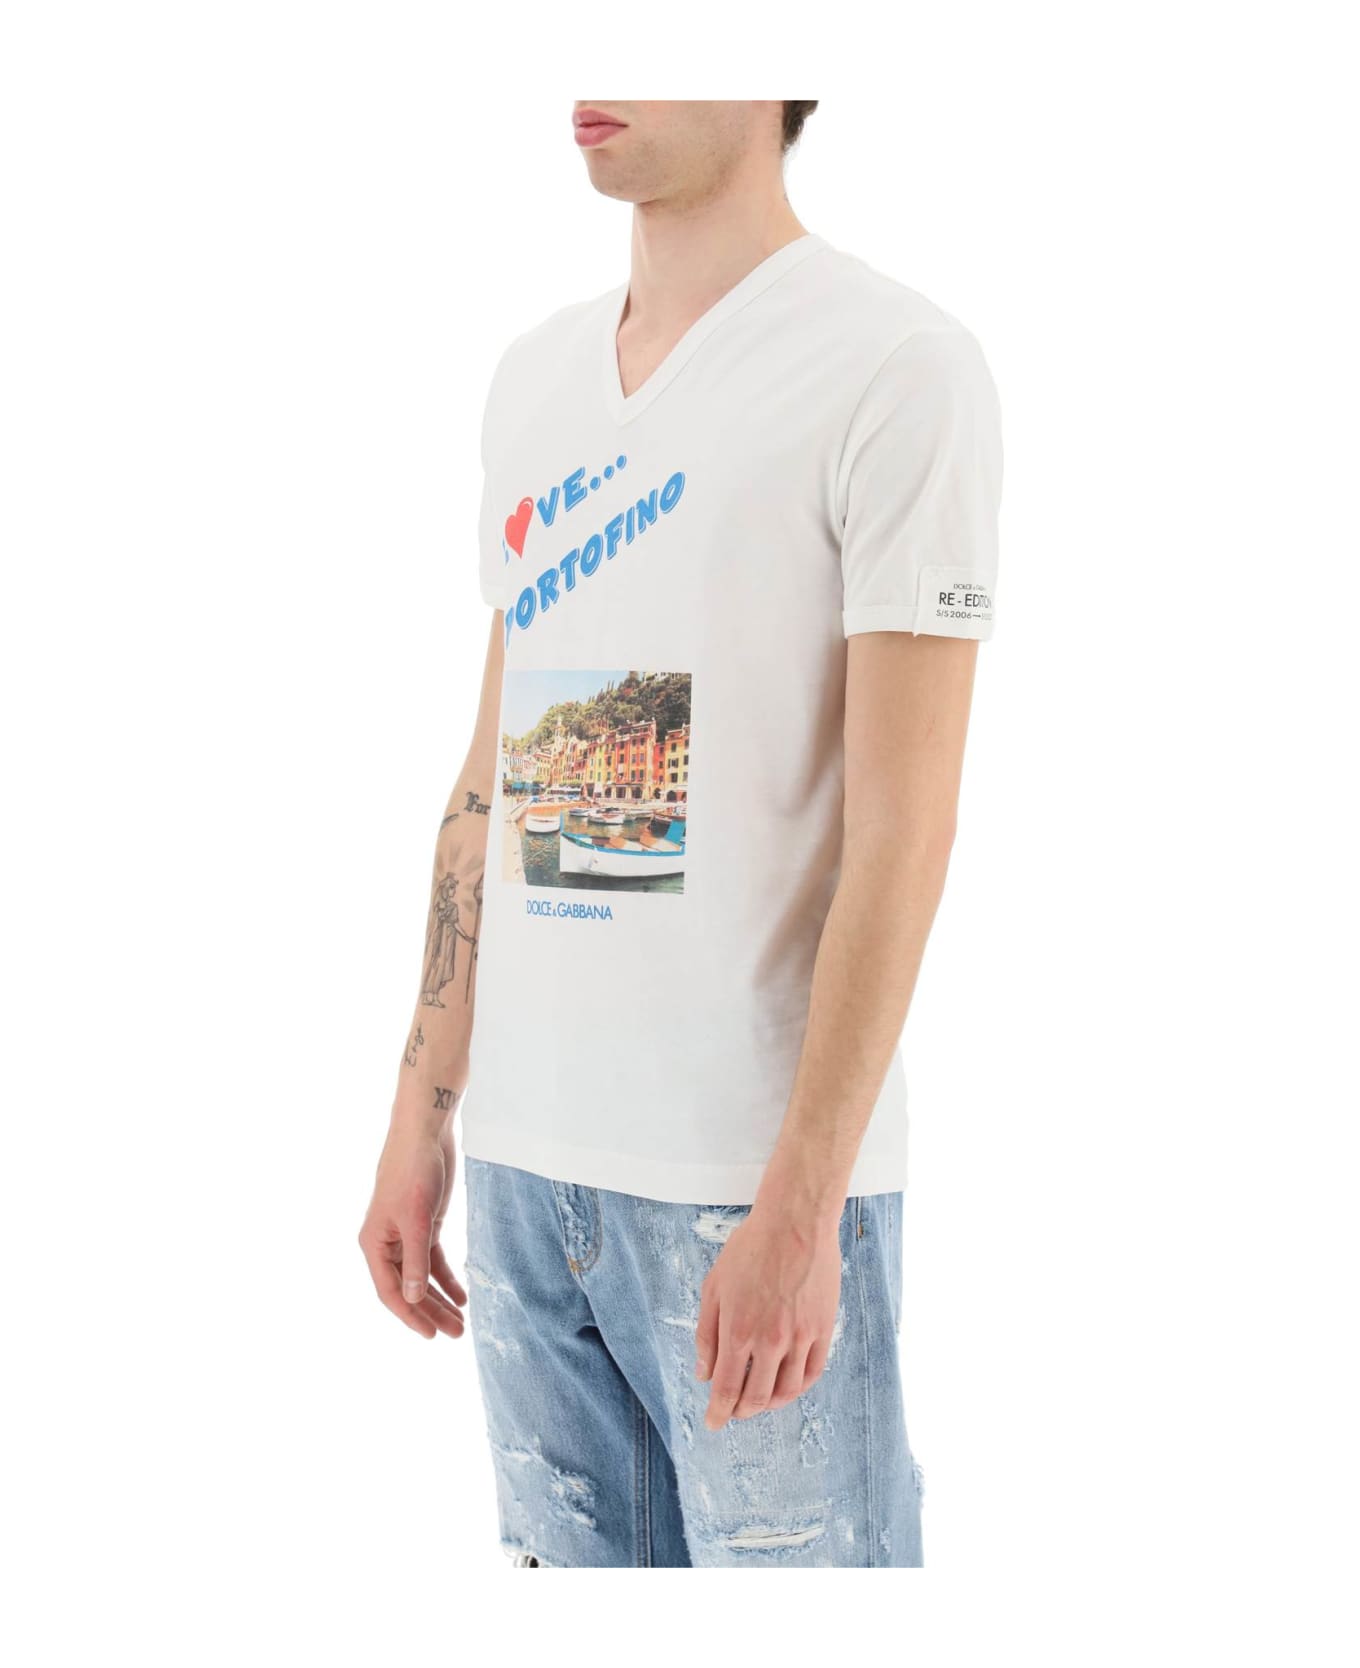 Dolce & Gabbana Portofino Print Re-edition T-shirt - VARIANTE ABBINATA (White)